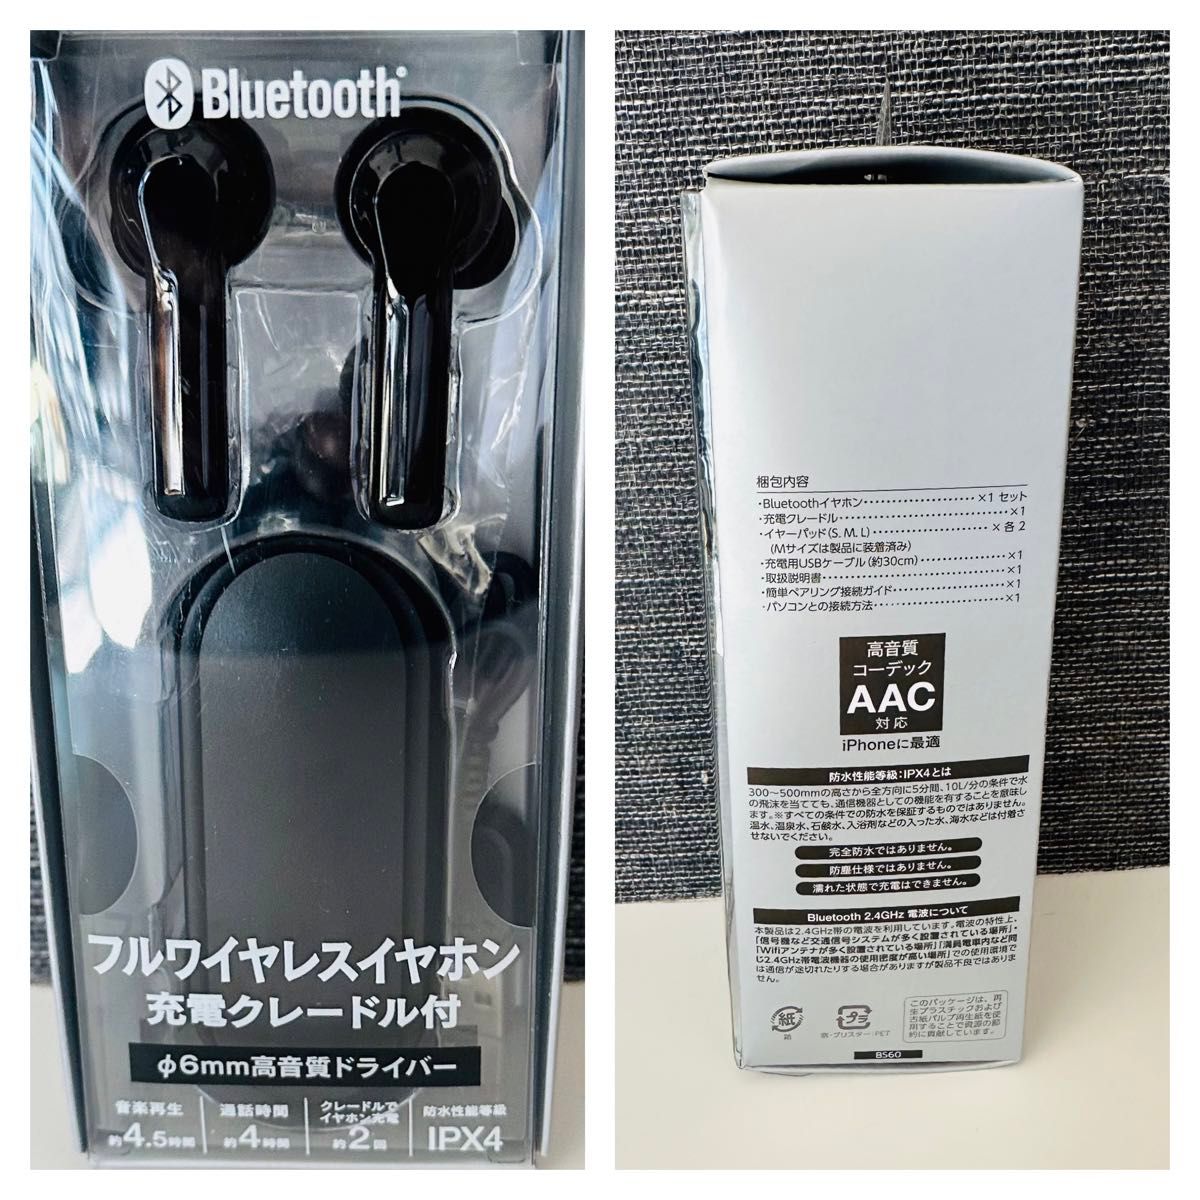 【新品未使用品】Bluetooth フルワイヤレスイヤホン 充電クレードル付